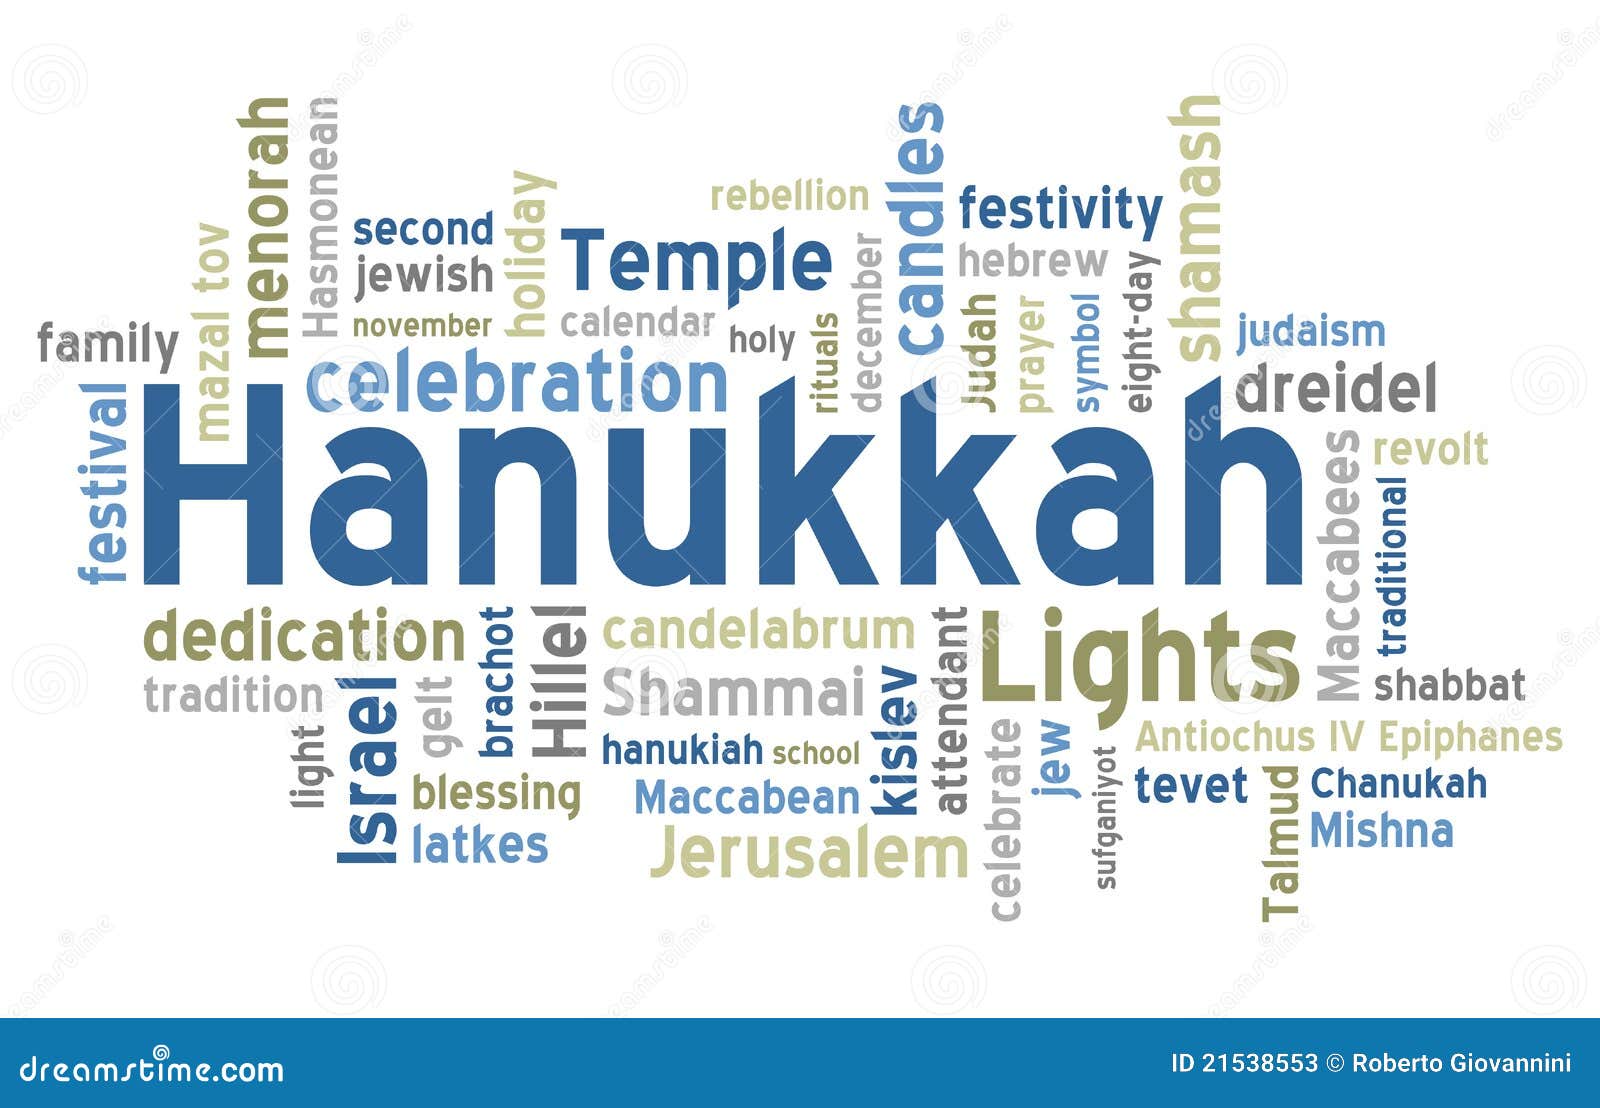 Hanukkah Word Cloud Stock Photos - Image: 21538553